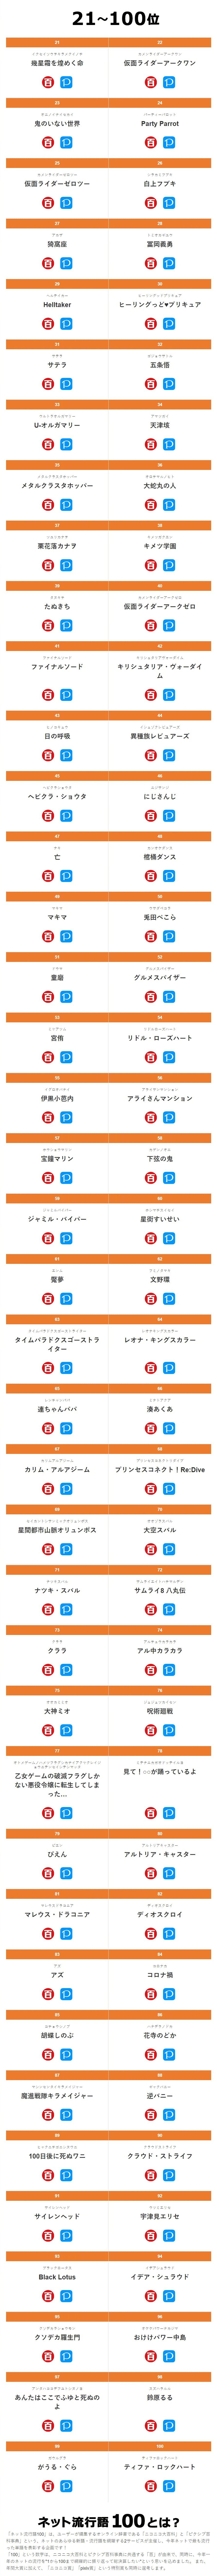 【2020年日本网络流行语100】NicoNico × Pixiv 排名发表插图4